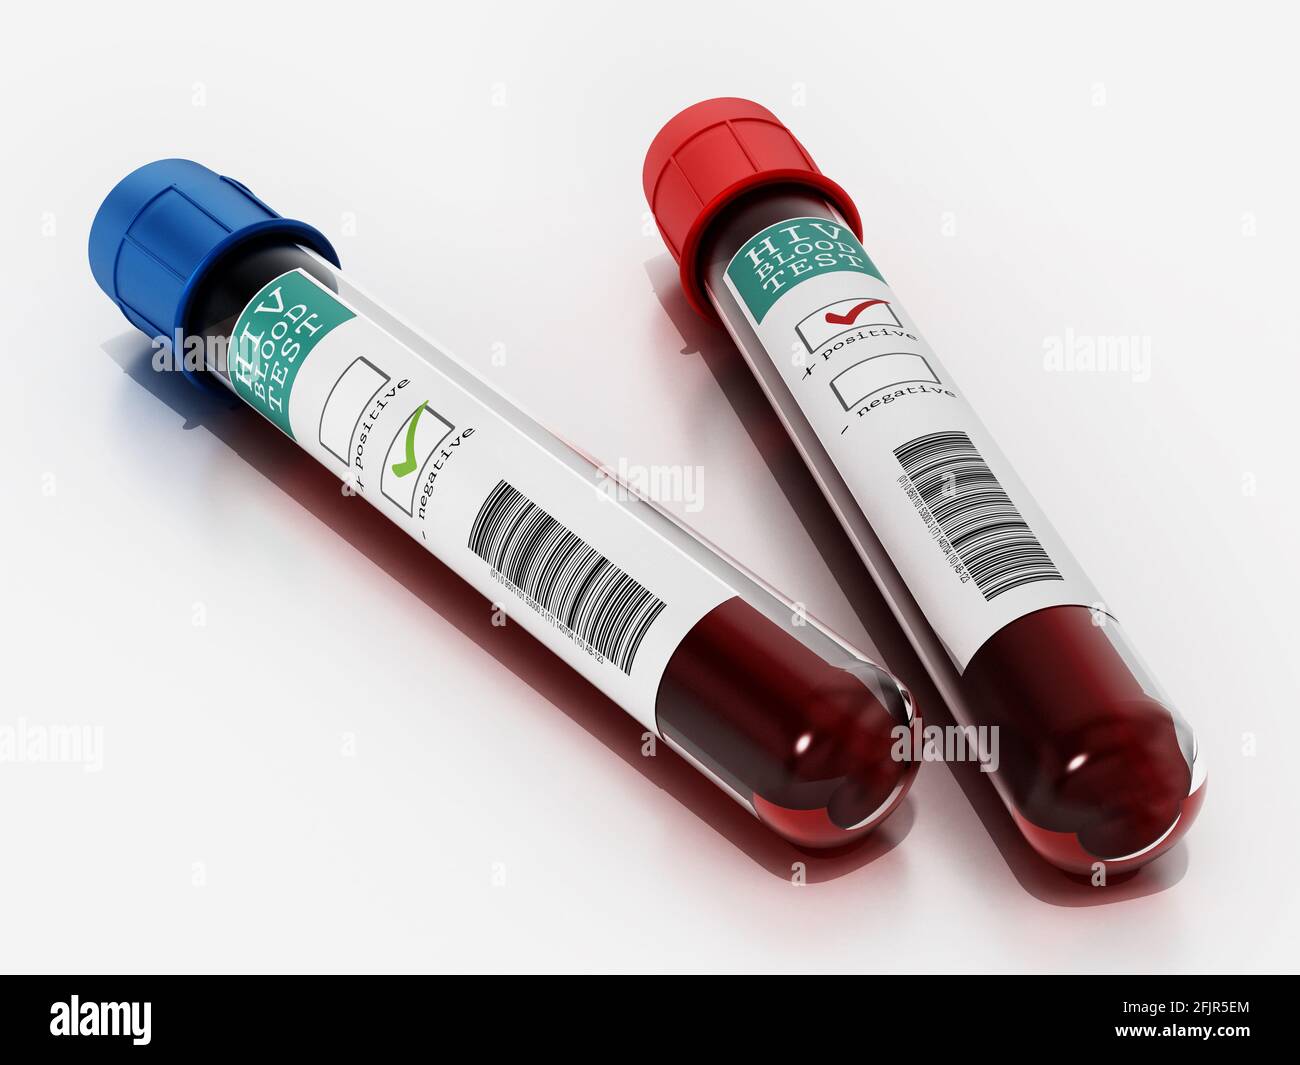 Échantillons de sang positifs et négatifs en flacons portant des étiquettes de test VIH. Illustration 3D. Banque D'Images